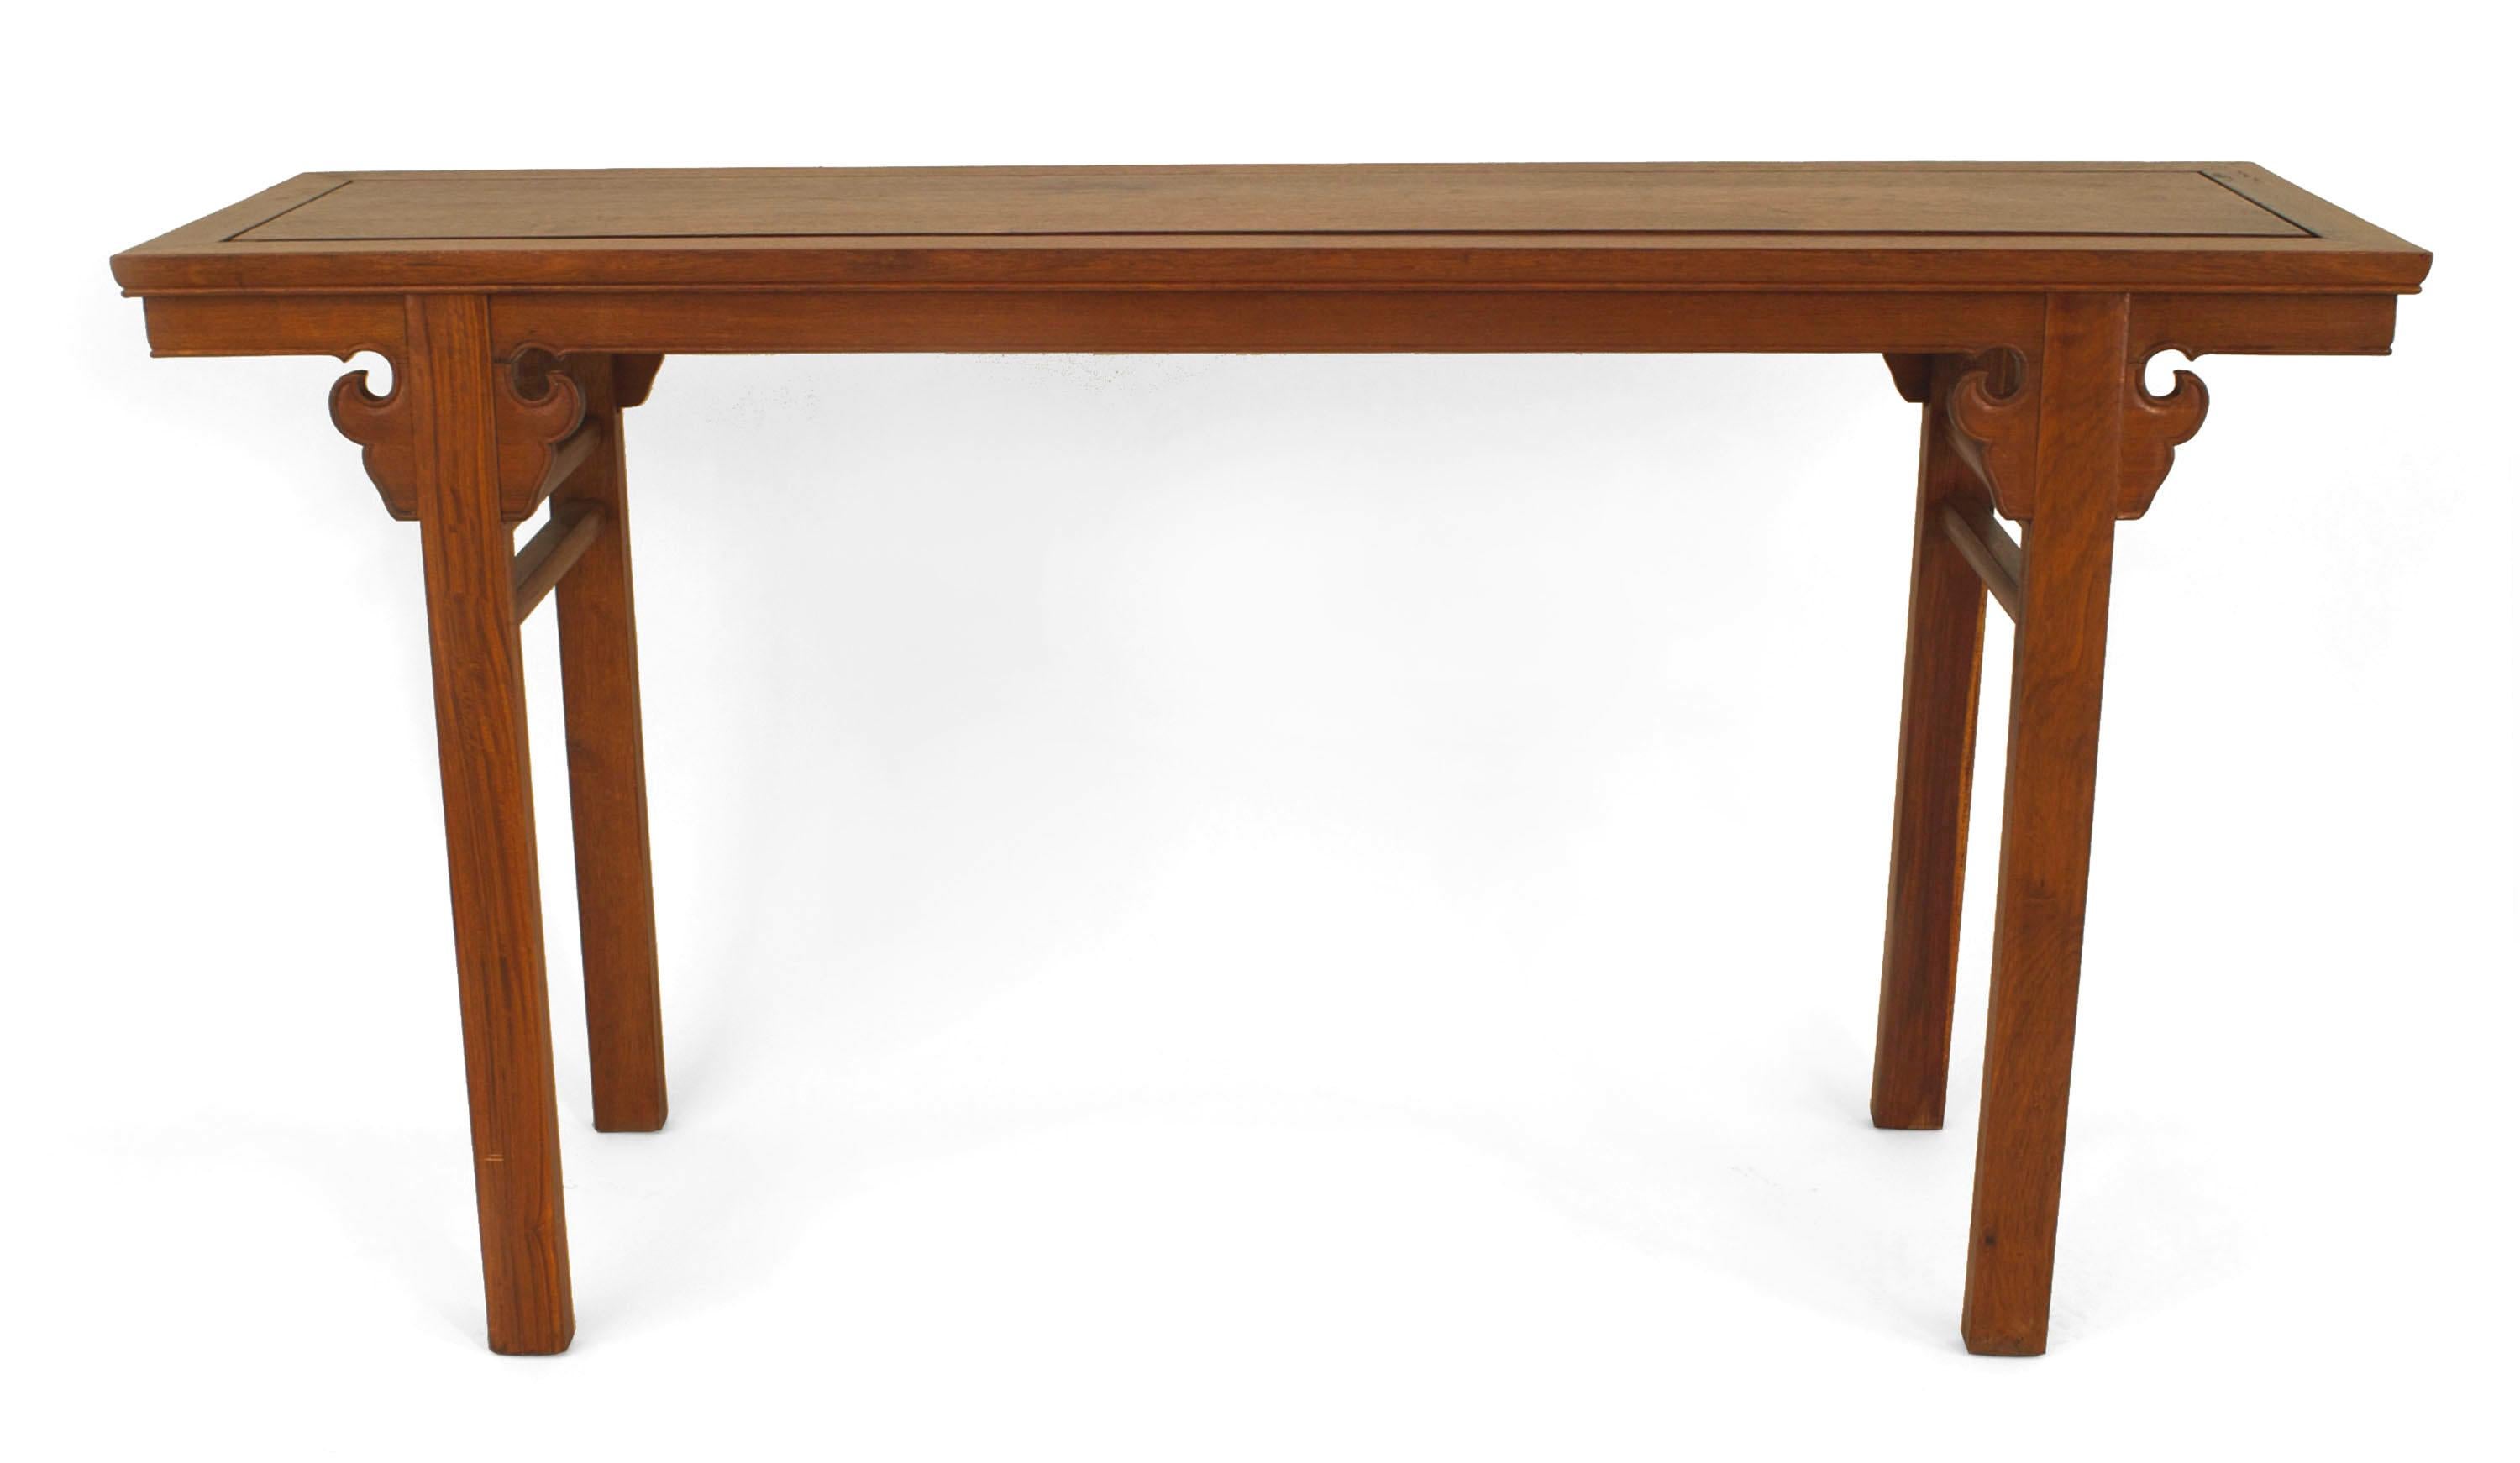 Table console (autel) étroite en bois dur de style asiatique chinois.
 